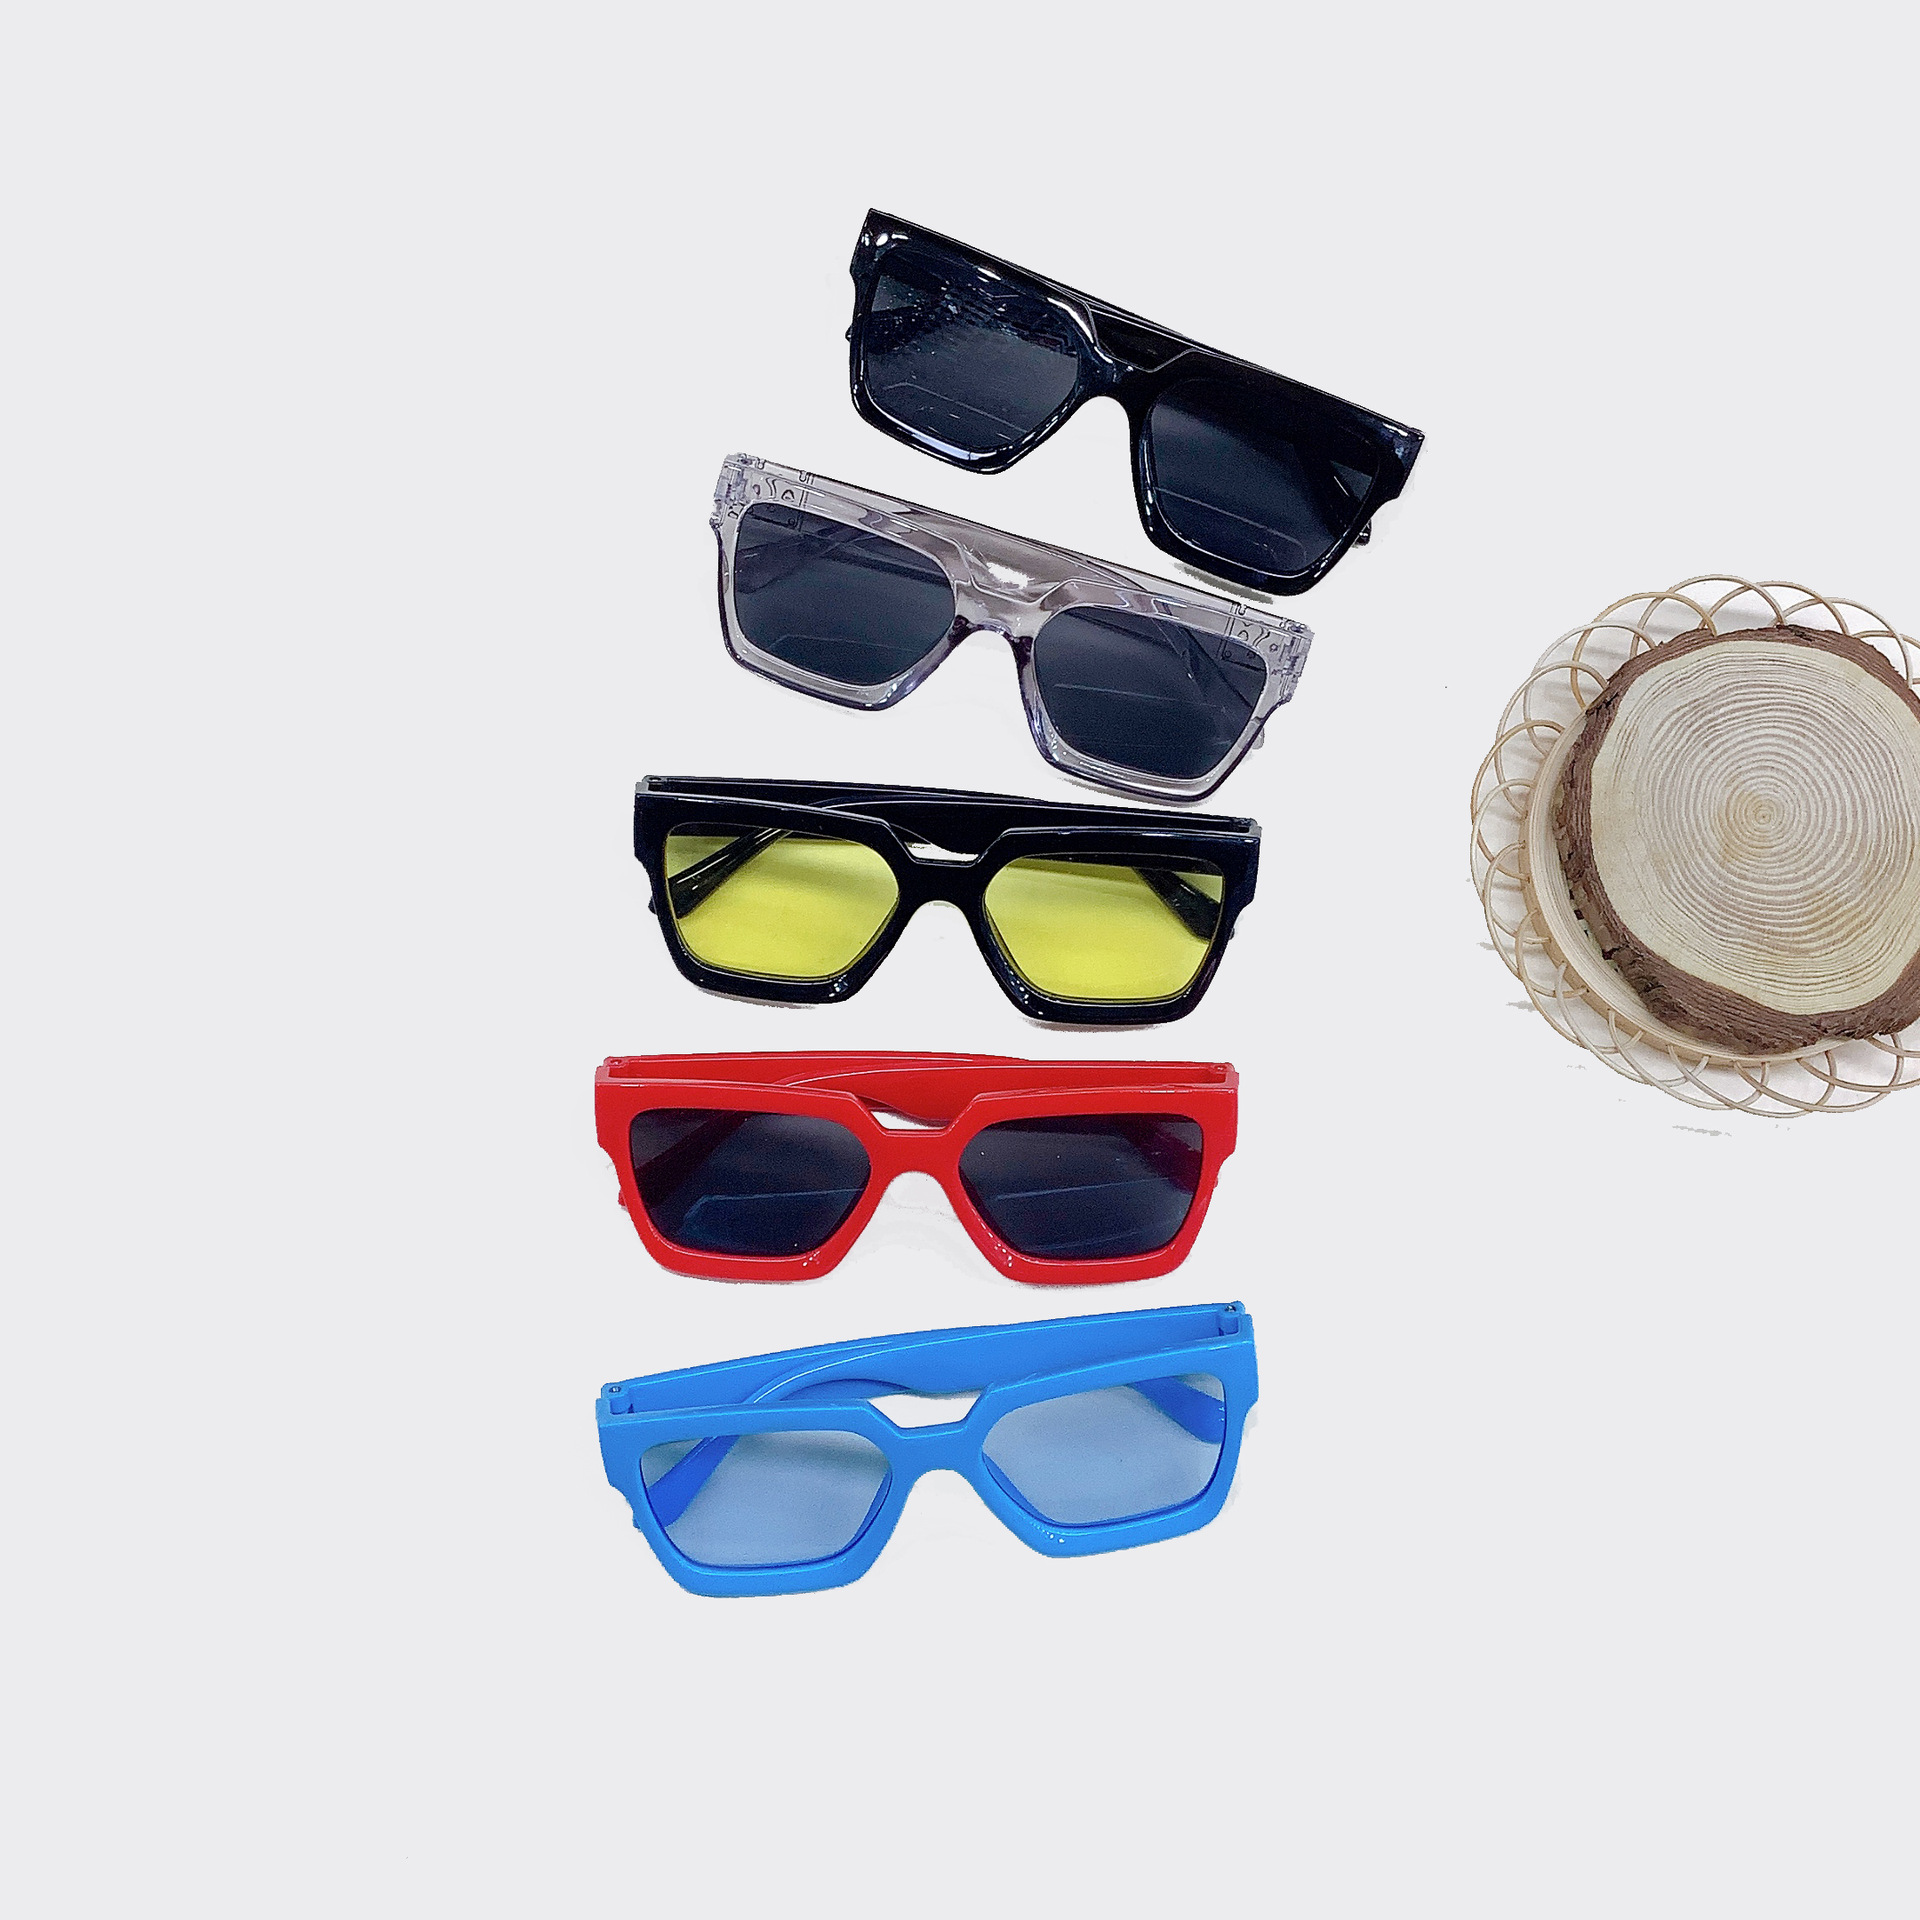 Fashion Retro Kids Sunglasses Personality Small Square Box Korean Style Exclusive for Cross-Border Baby Sunglasses Fashion